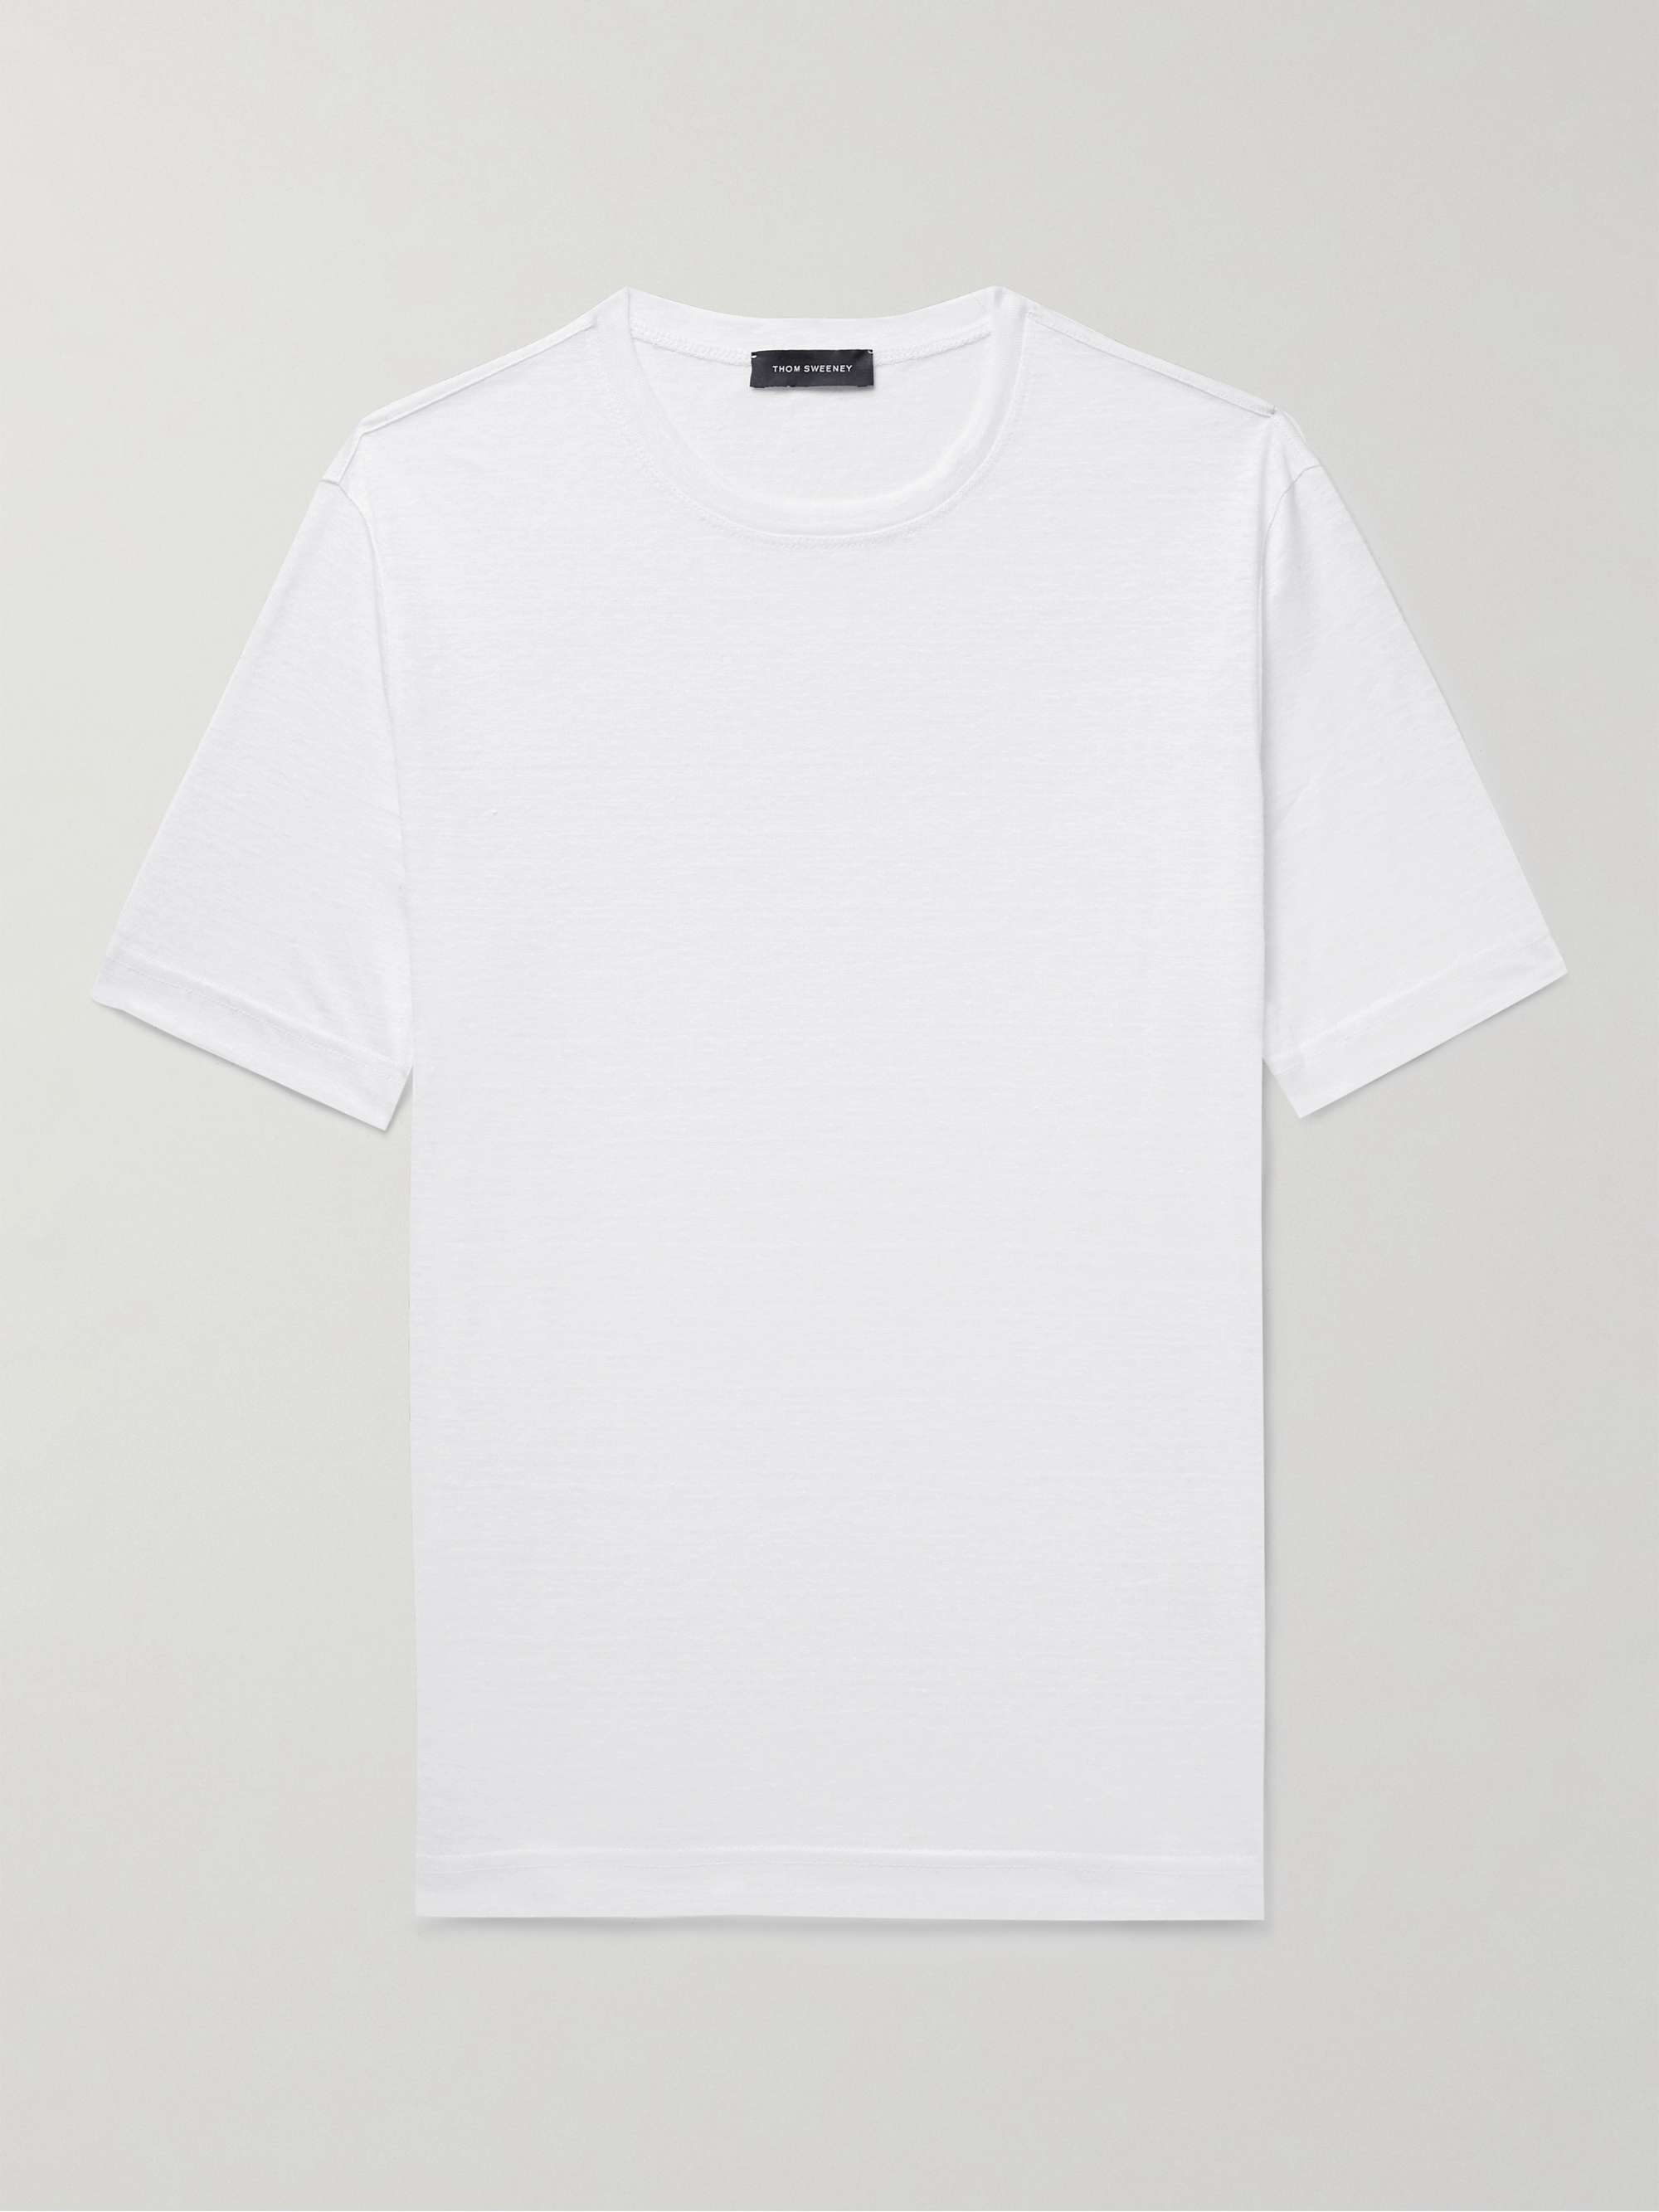 THOM SWEENEY Slub Linen T-Shirt